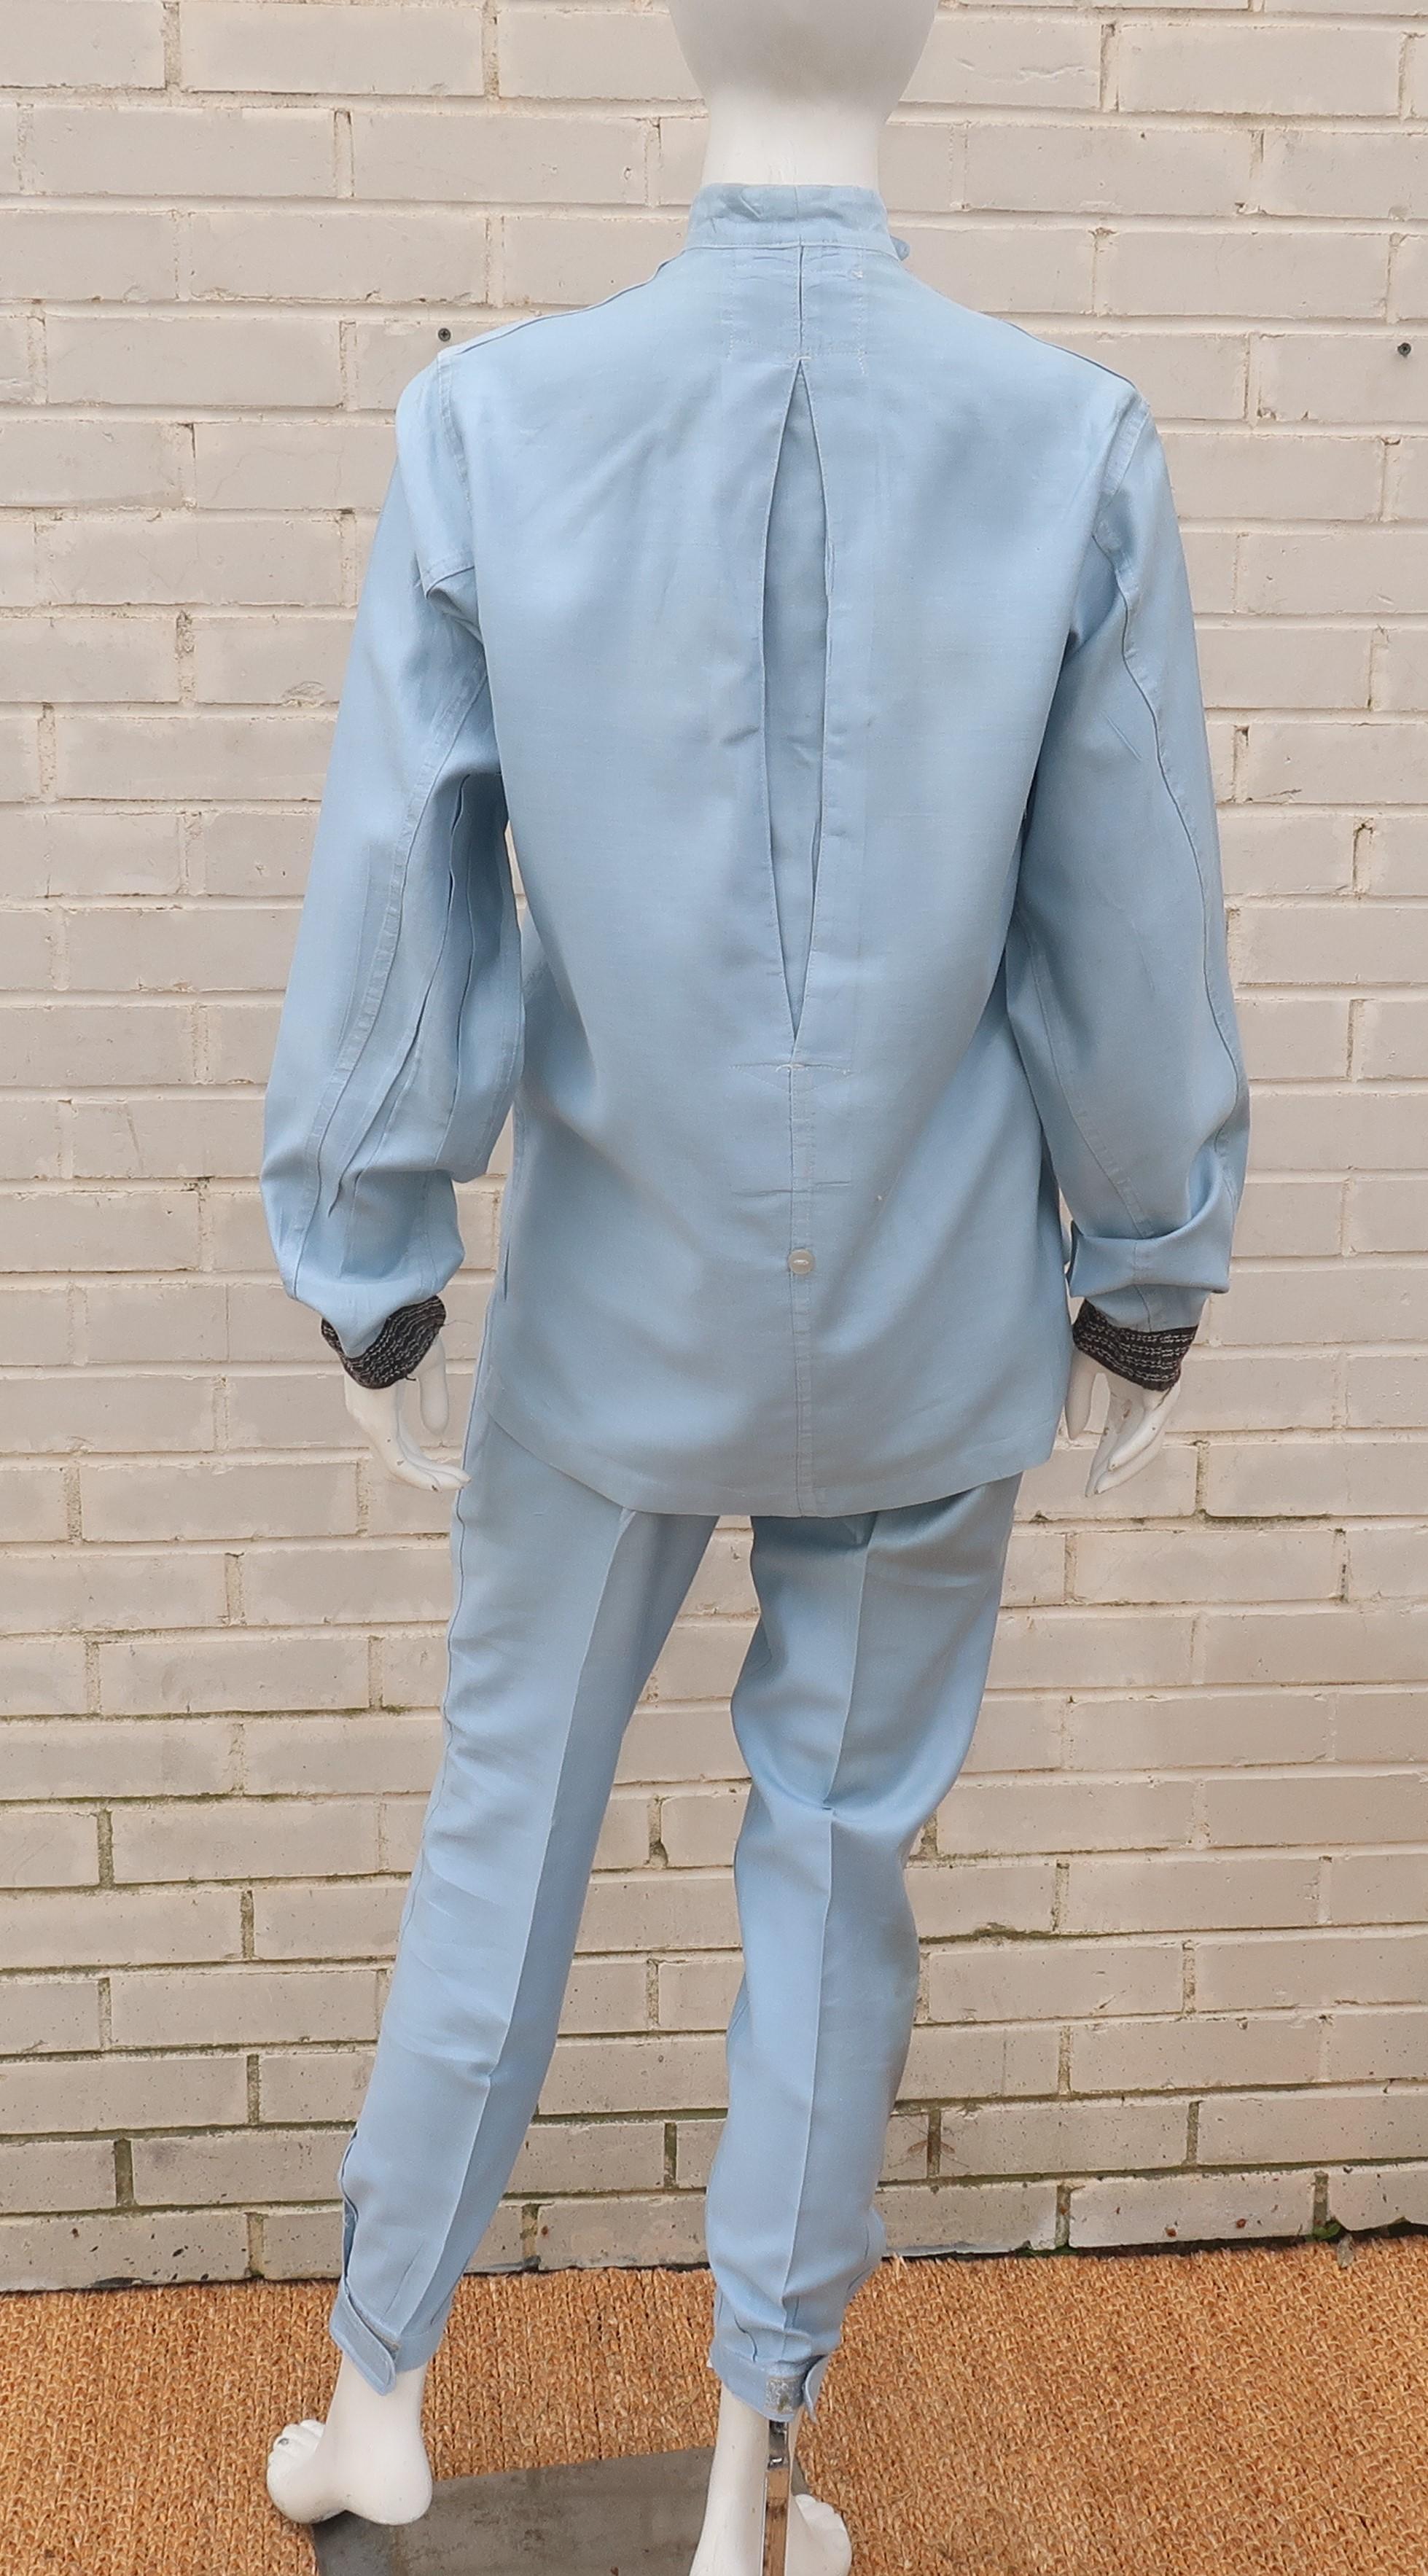 Authentic 1960’s Auto Racing Uniform Suit 3